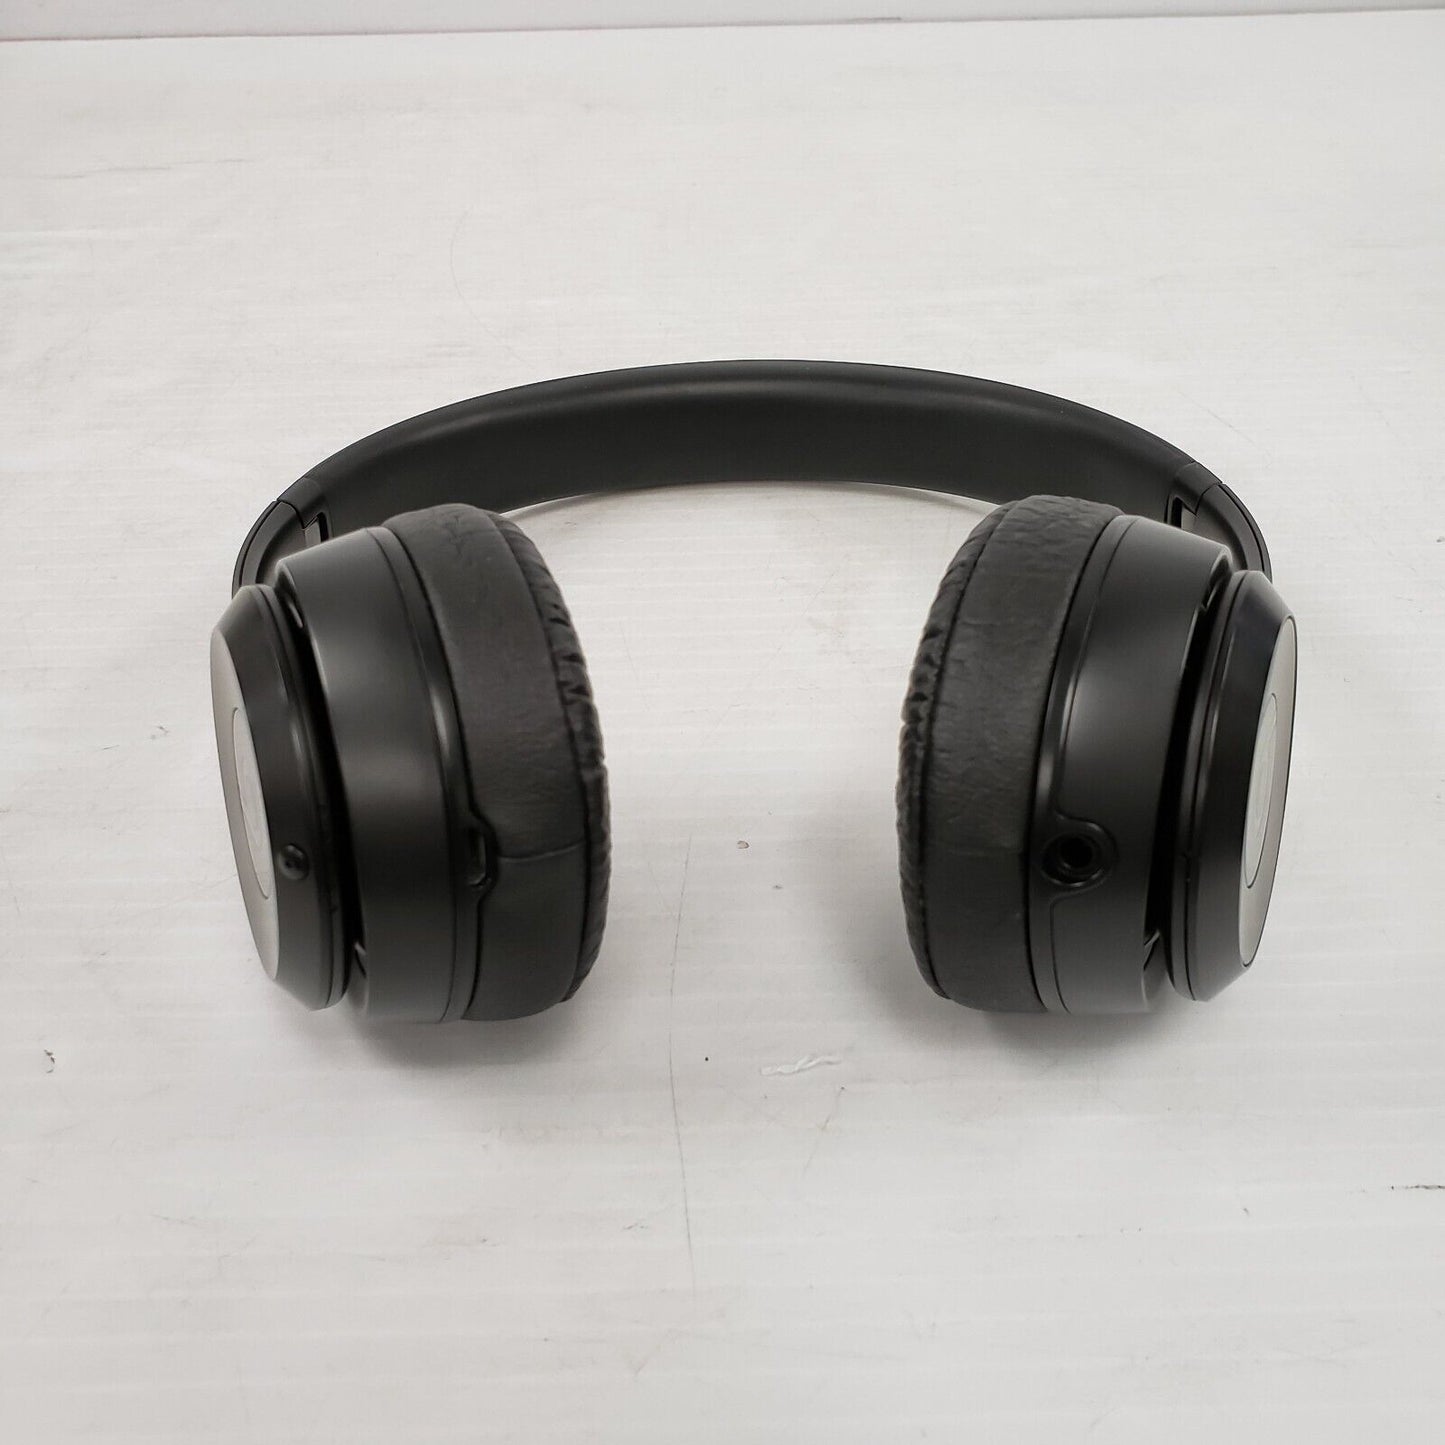 (52356-1) Apple A1796 Beats Solo 3 Headphones